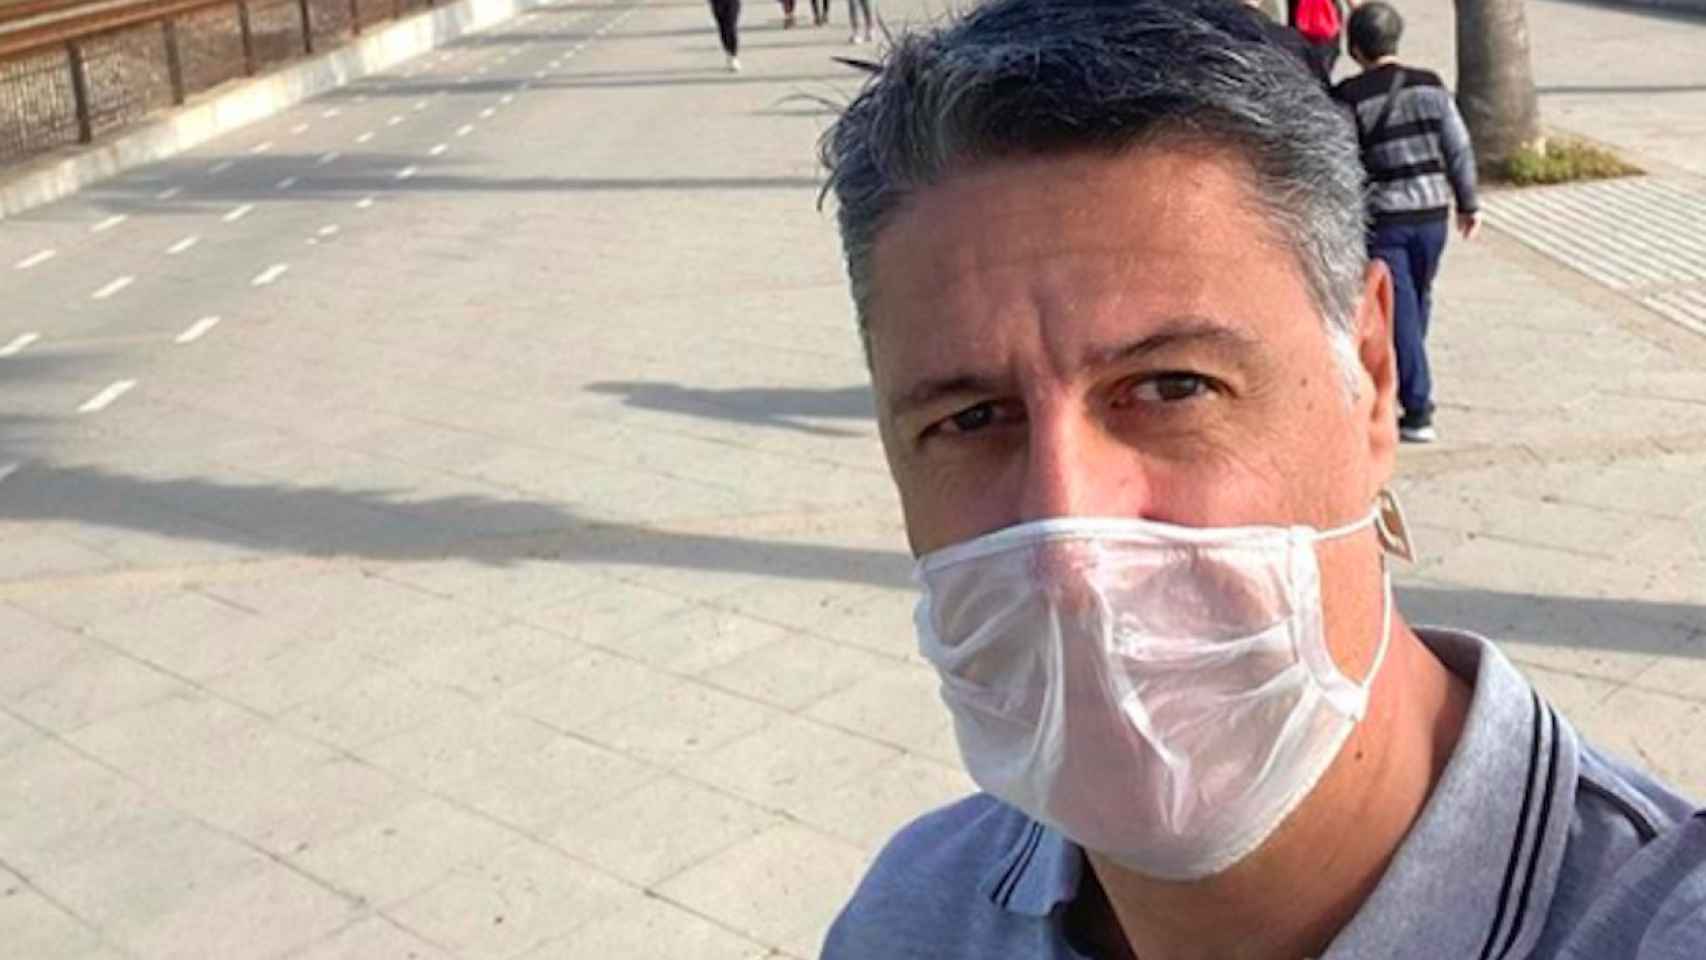 El alcalde de Badalona, Xavier García Albiol, tras salir a correr este sábado / INSTAGRAM